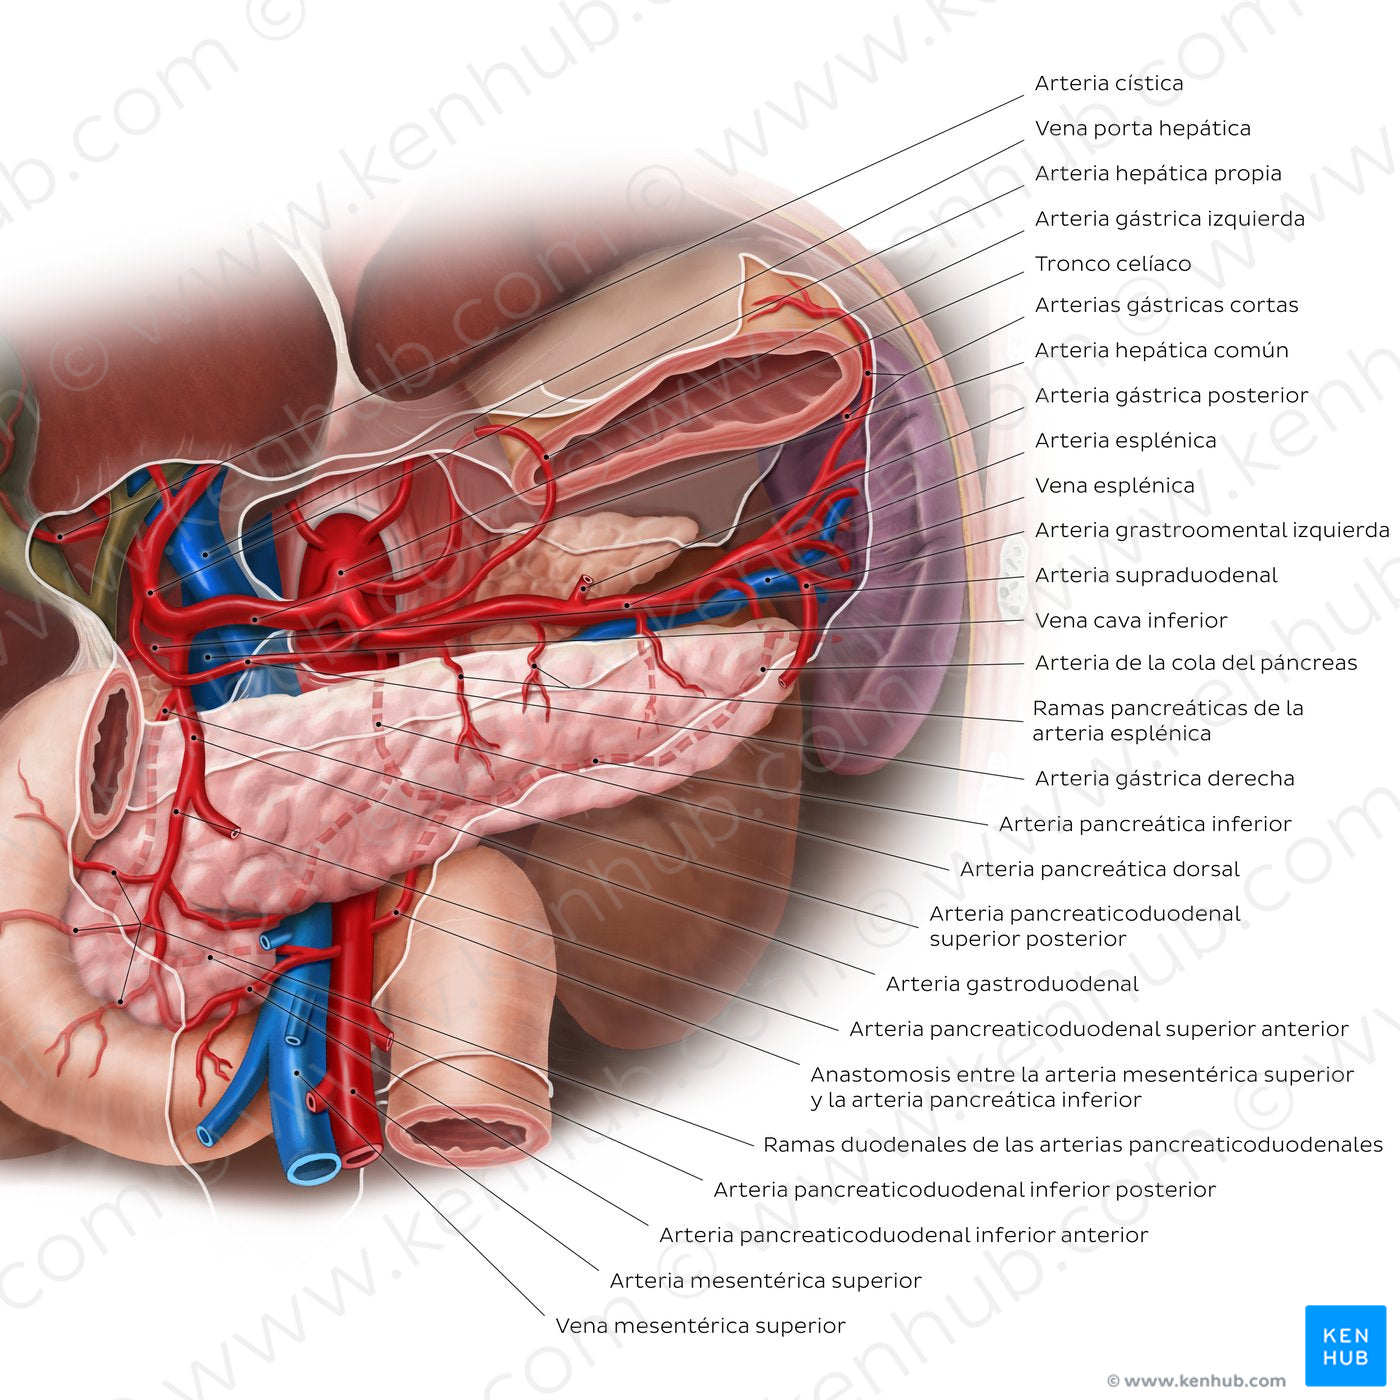 Arteries of the pancreas, duodenum and spleen (Spanish)